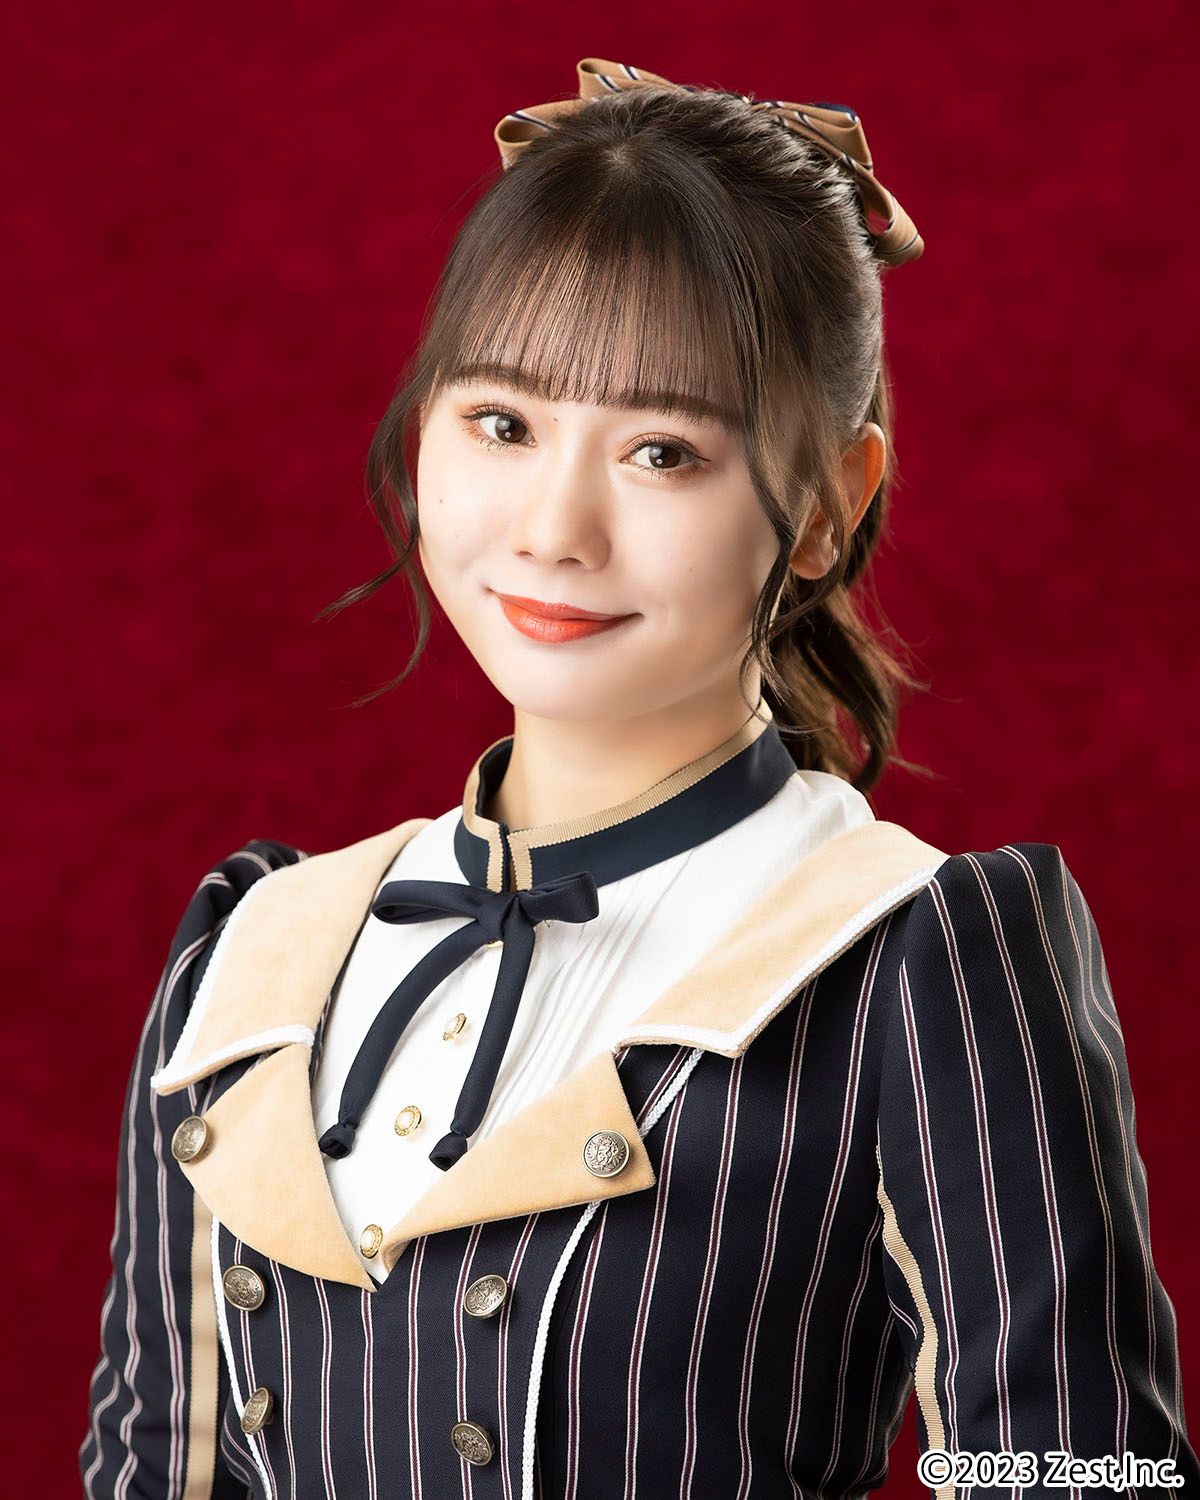 Matsumoto Chikako | AKB48 Wiki | Fandom